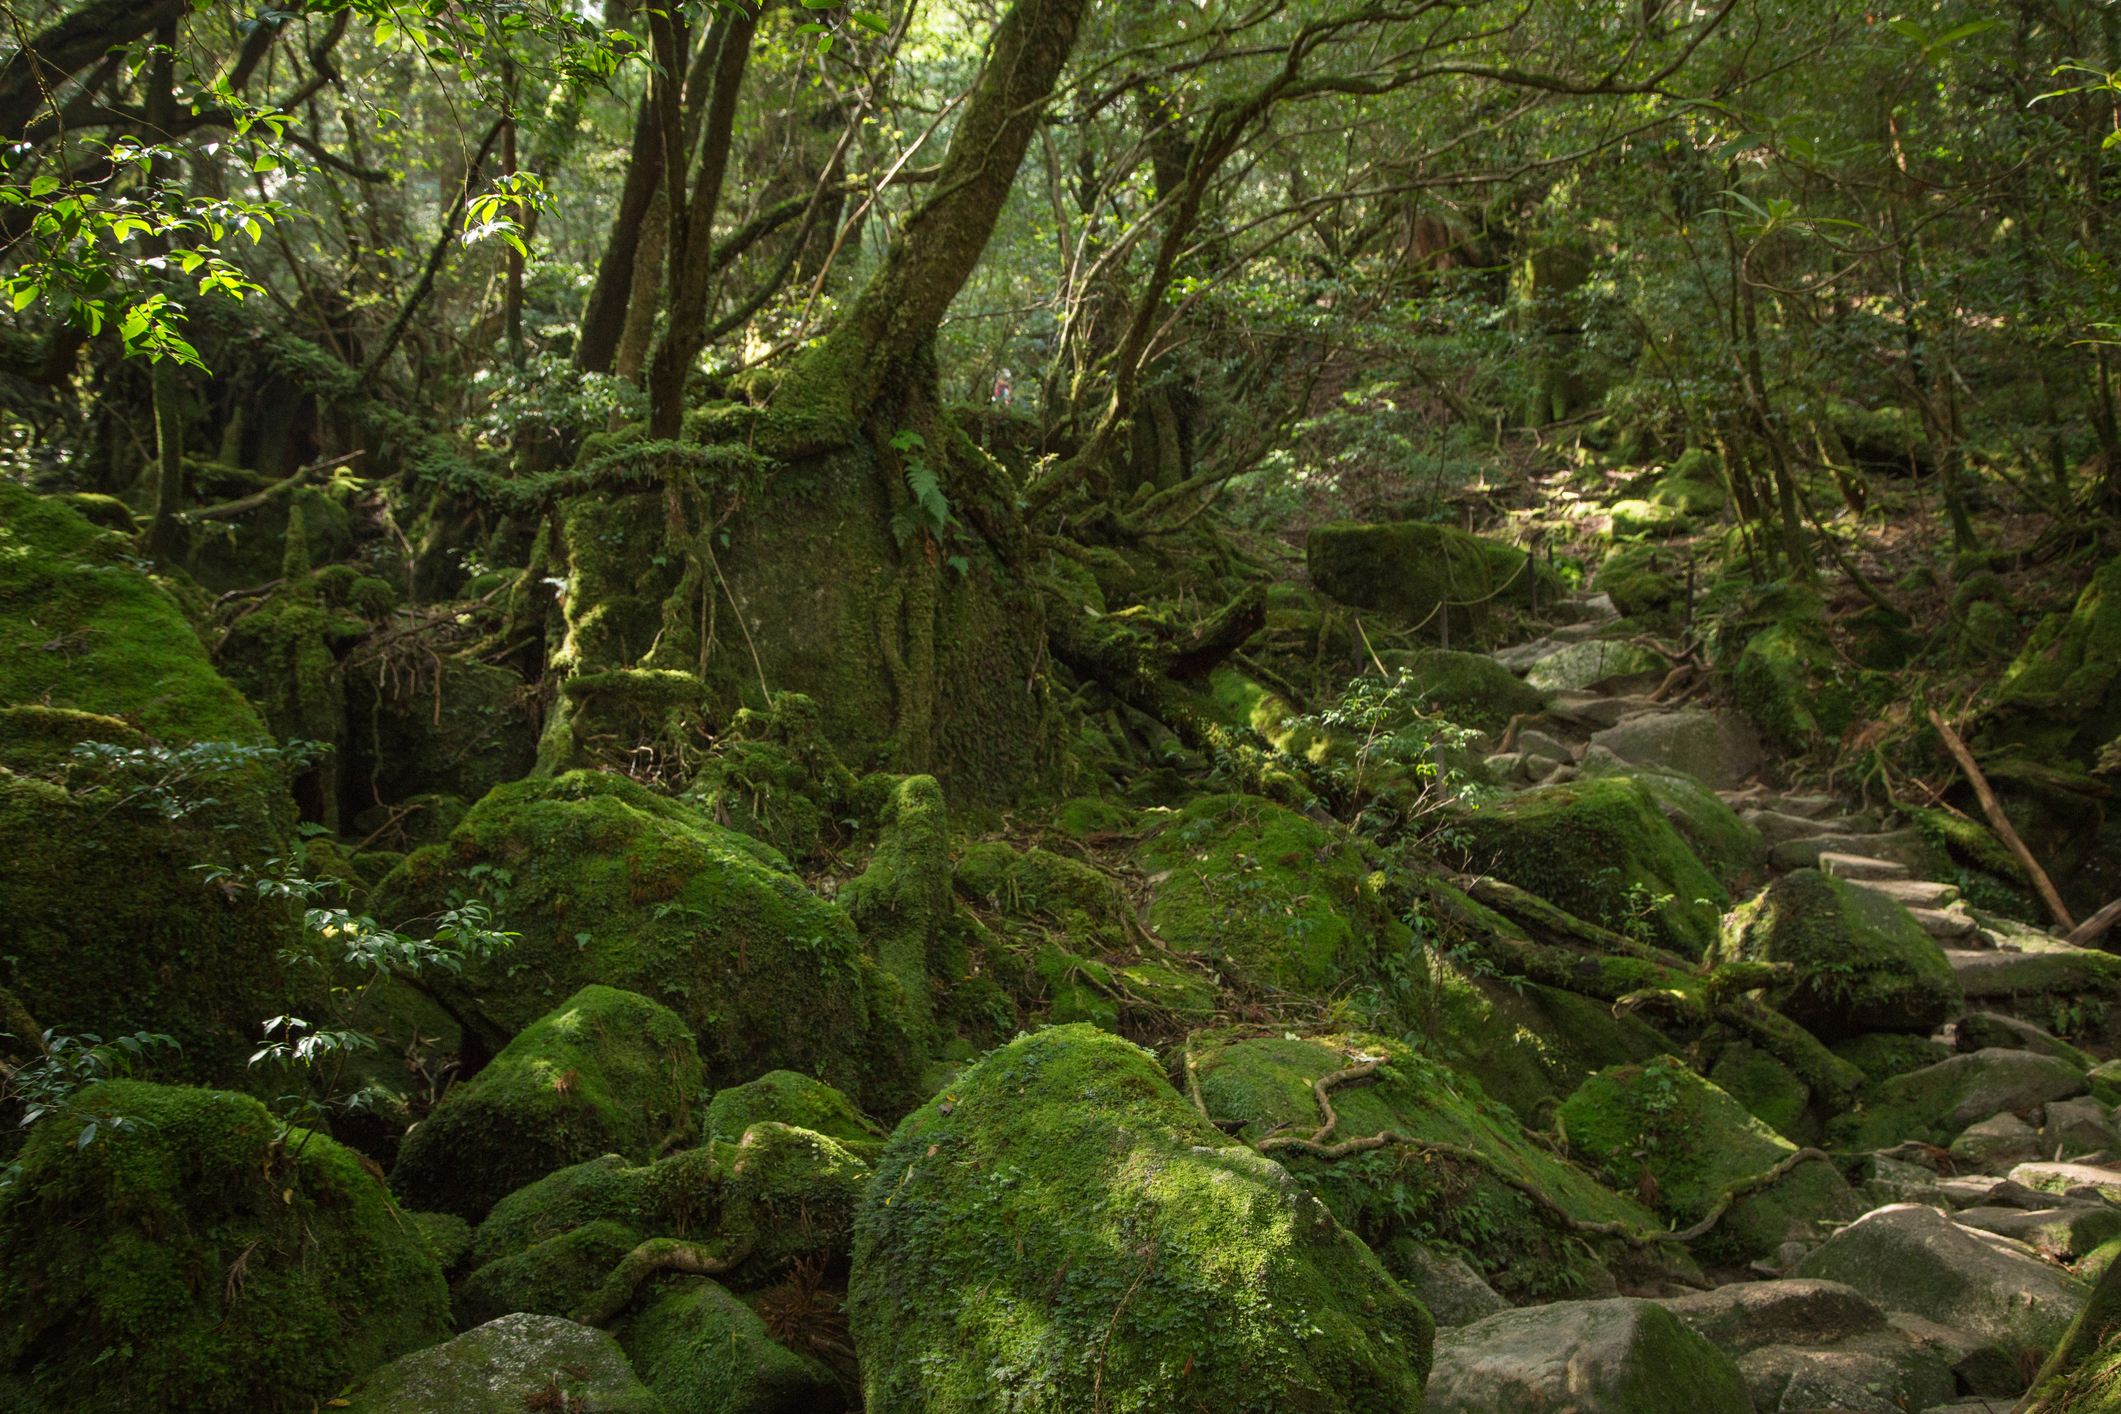 Moss forest in Shiratani Unsuikyo, Yakushima, Japan